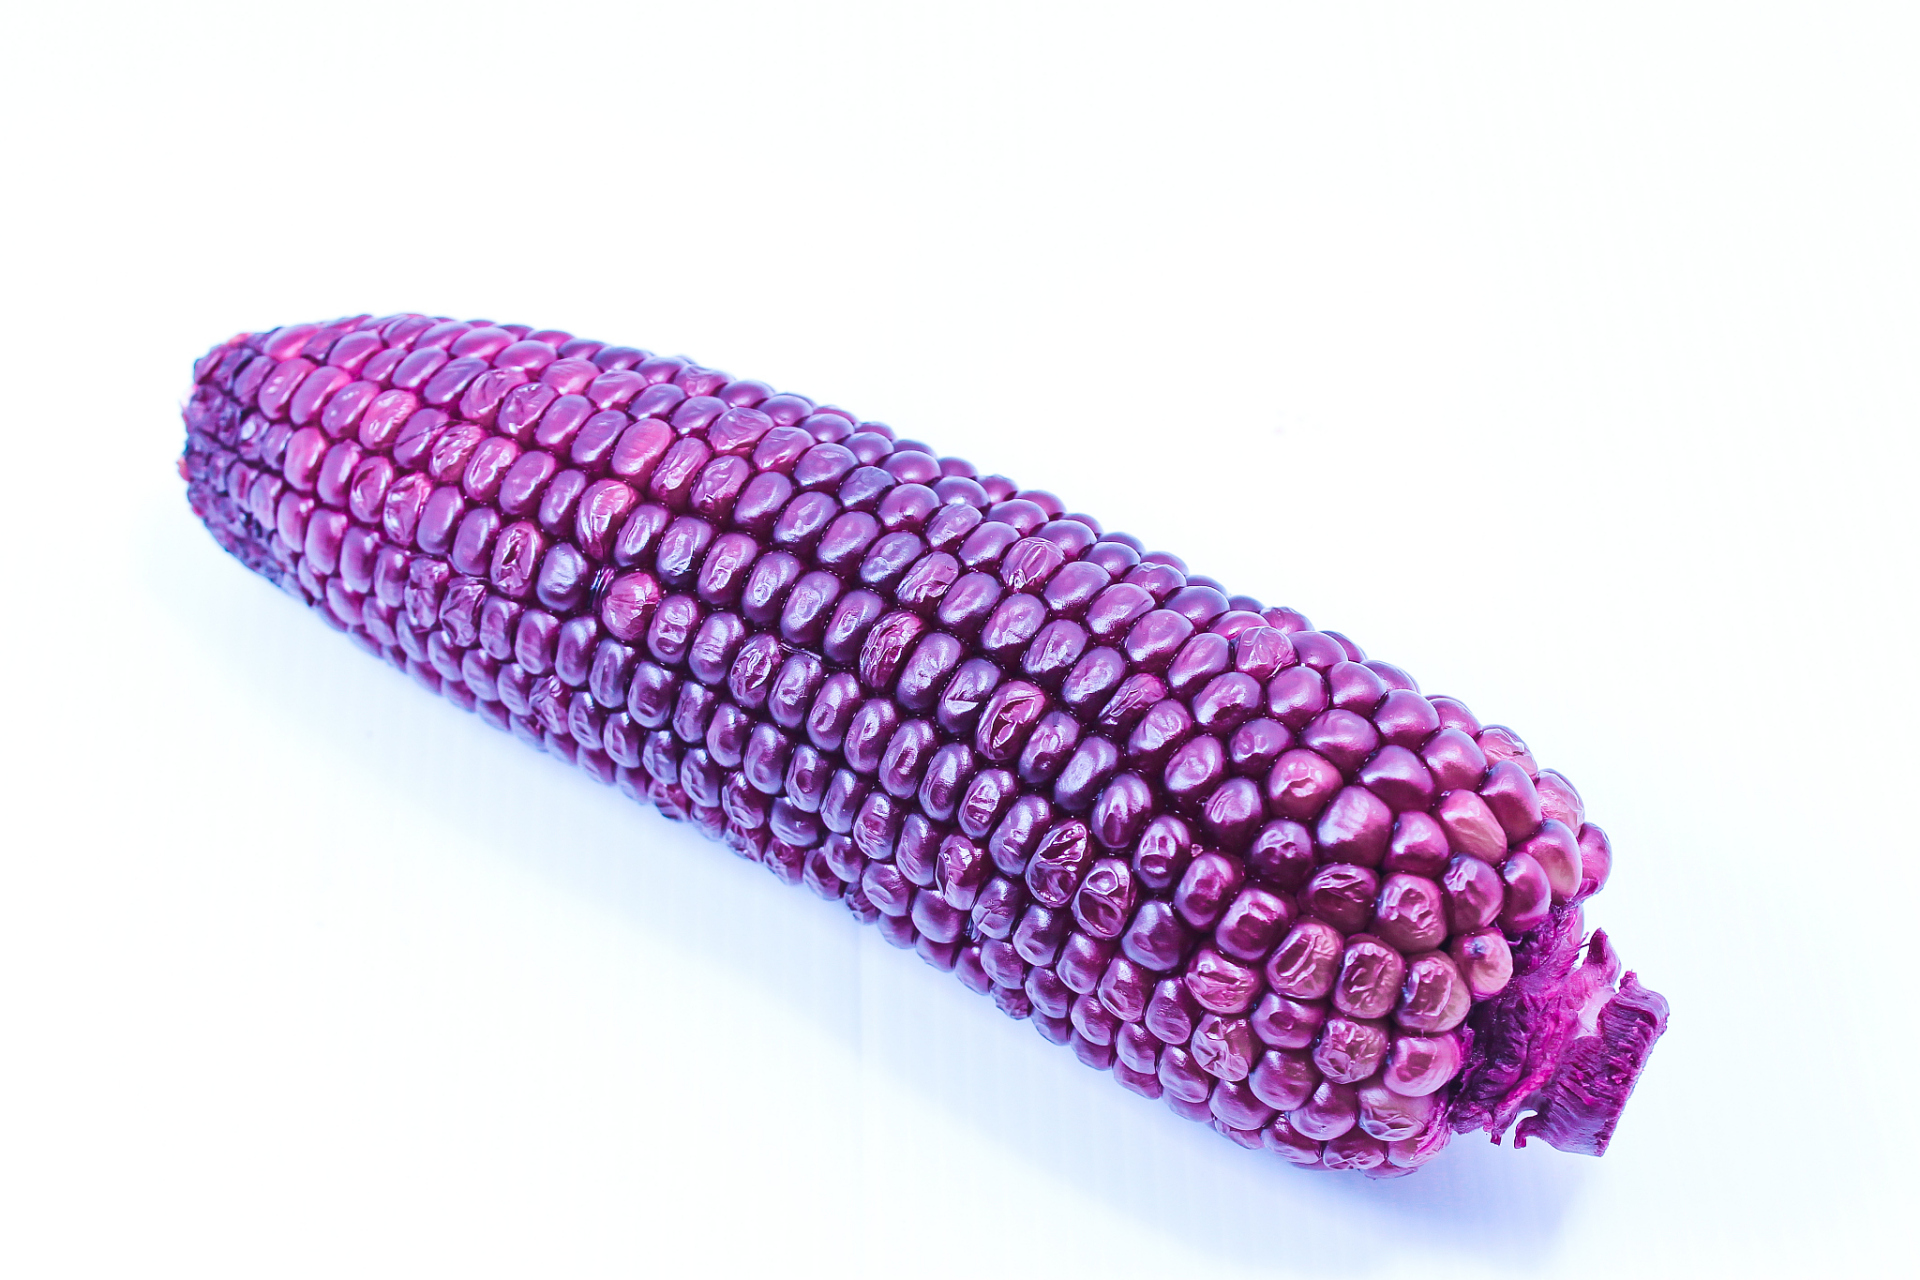 买回的紫玉米,煮后发现煮玉米的水都成紫红色了,怎么回事?